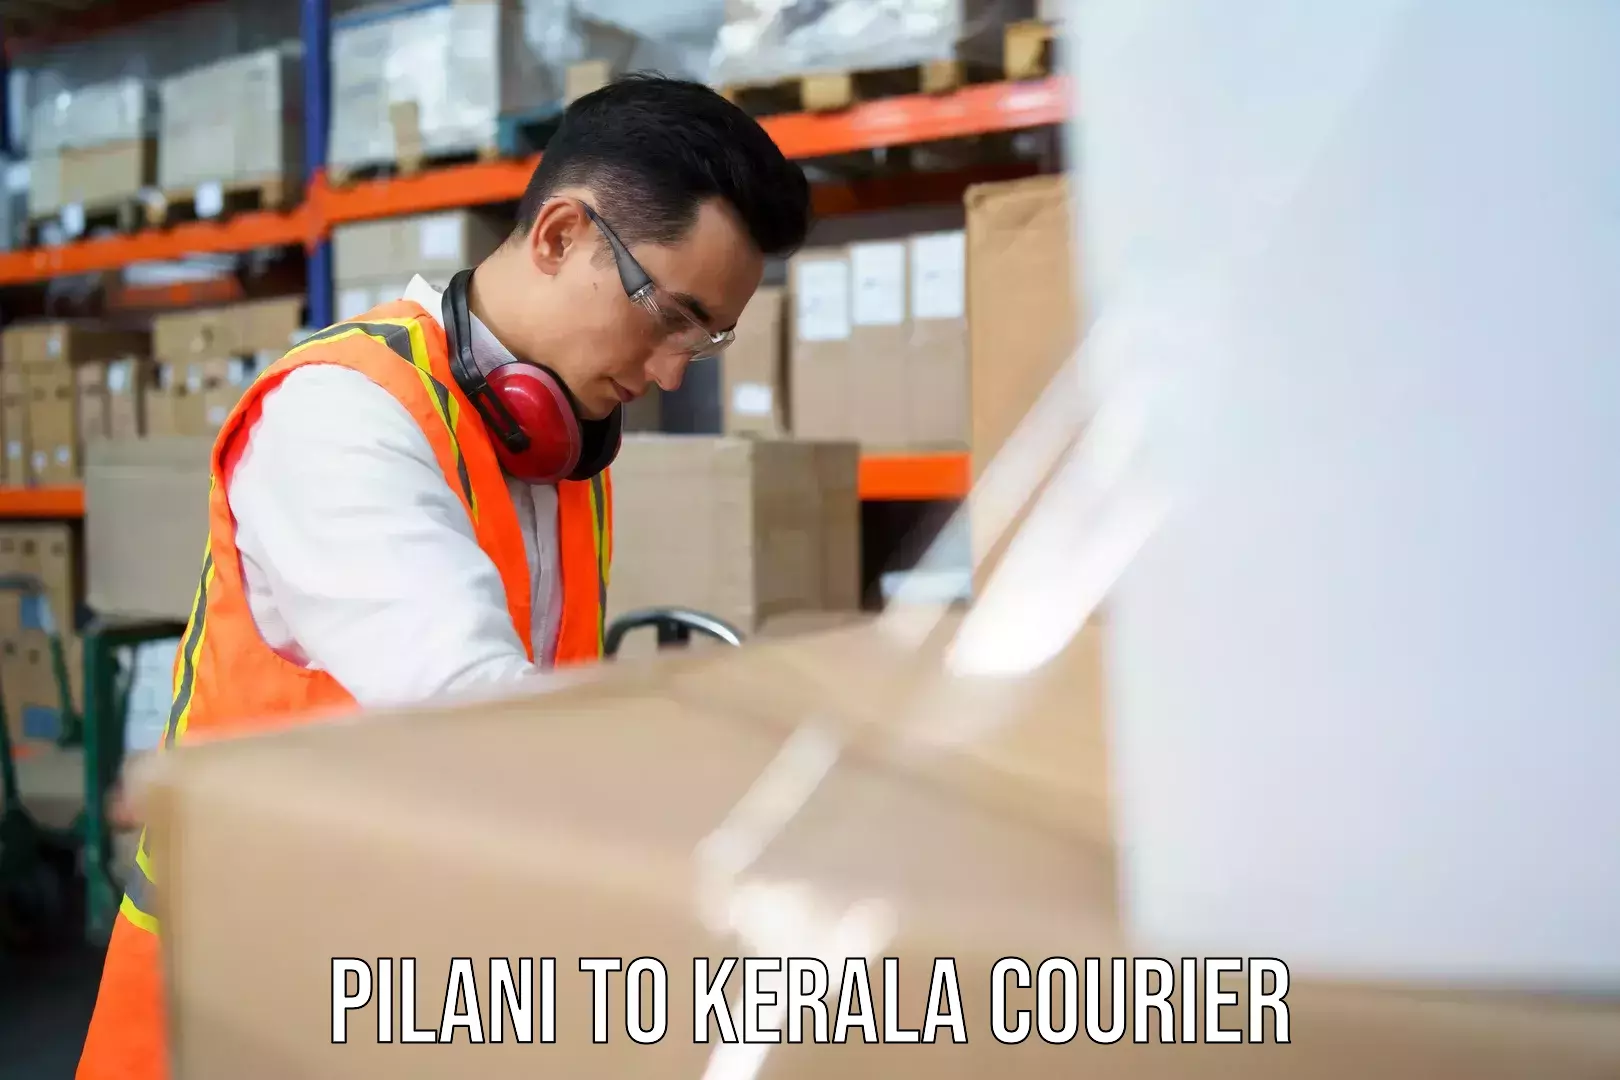 Global shipping solutions Pilani to Mundakayam